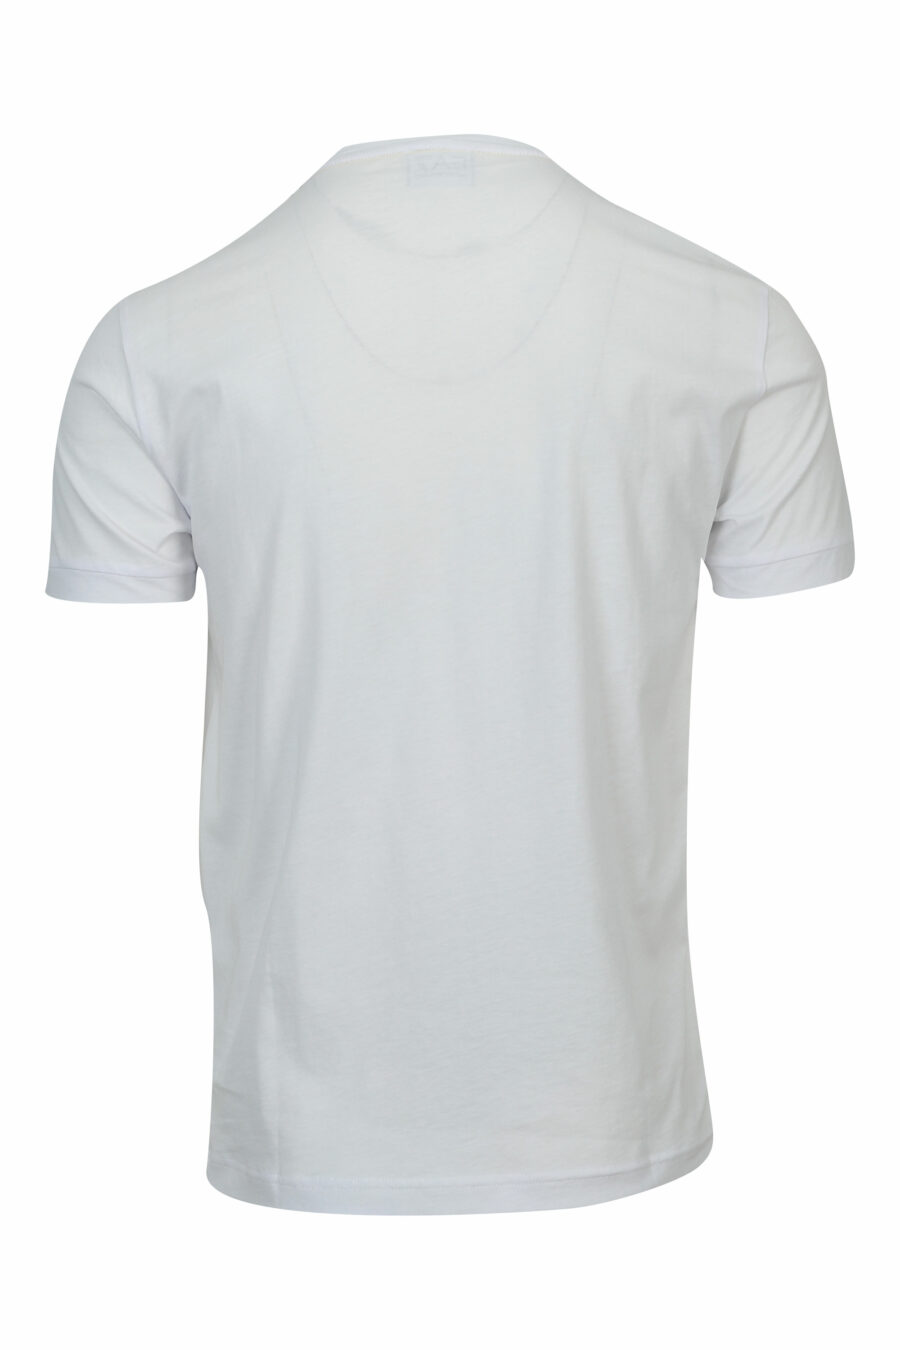 Camiseta blanca con minilogo en cinta "lux identity" negro - 8057970711308 1